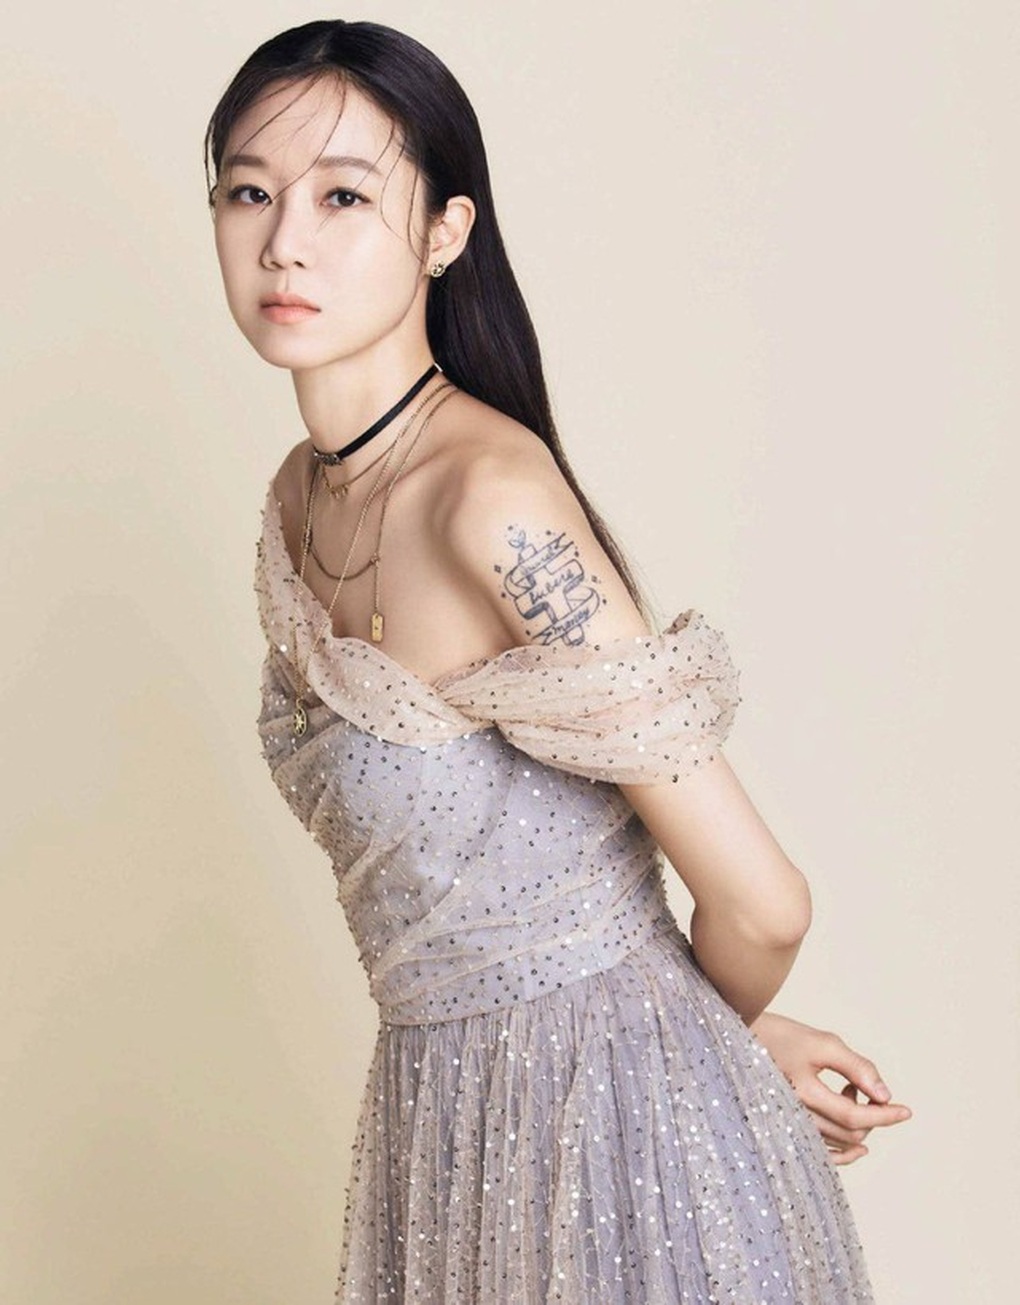 Chị đẹp Gong Hyo Jin: Giàu có, hôn nhân viên mãn bên chồng kém 10 tuổi - 2